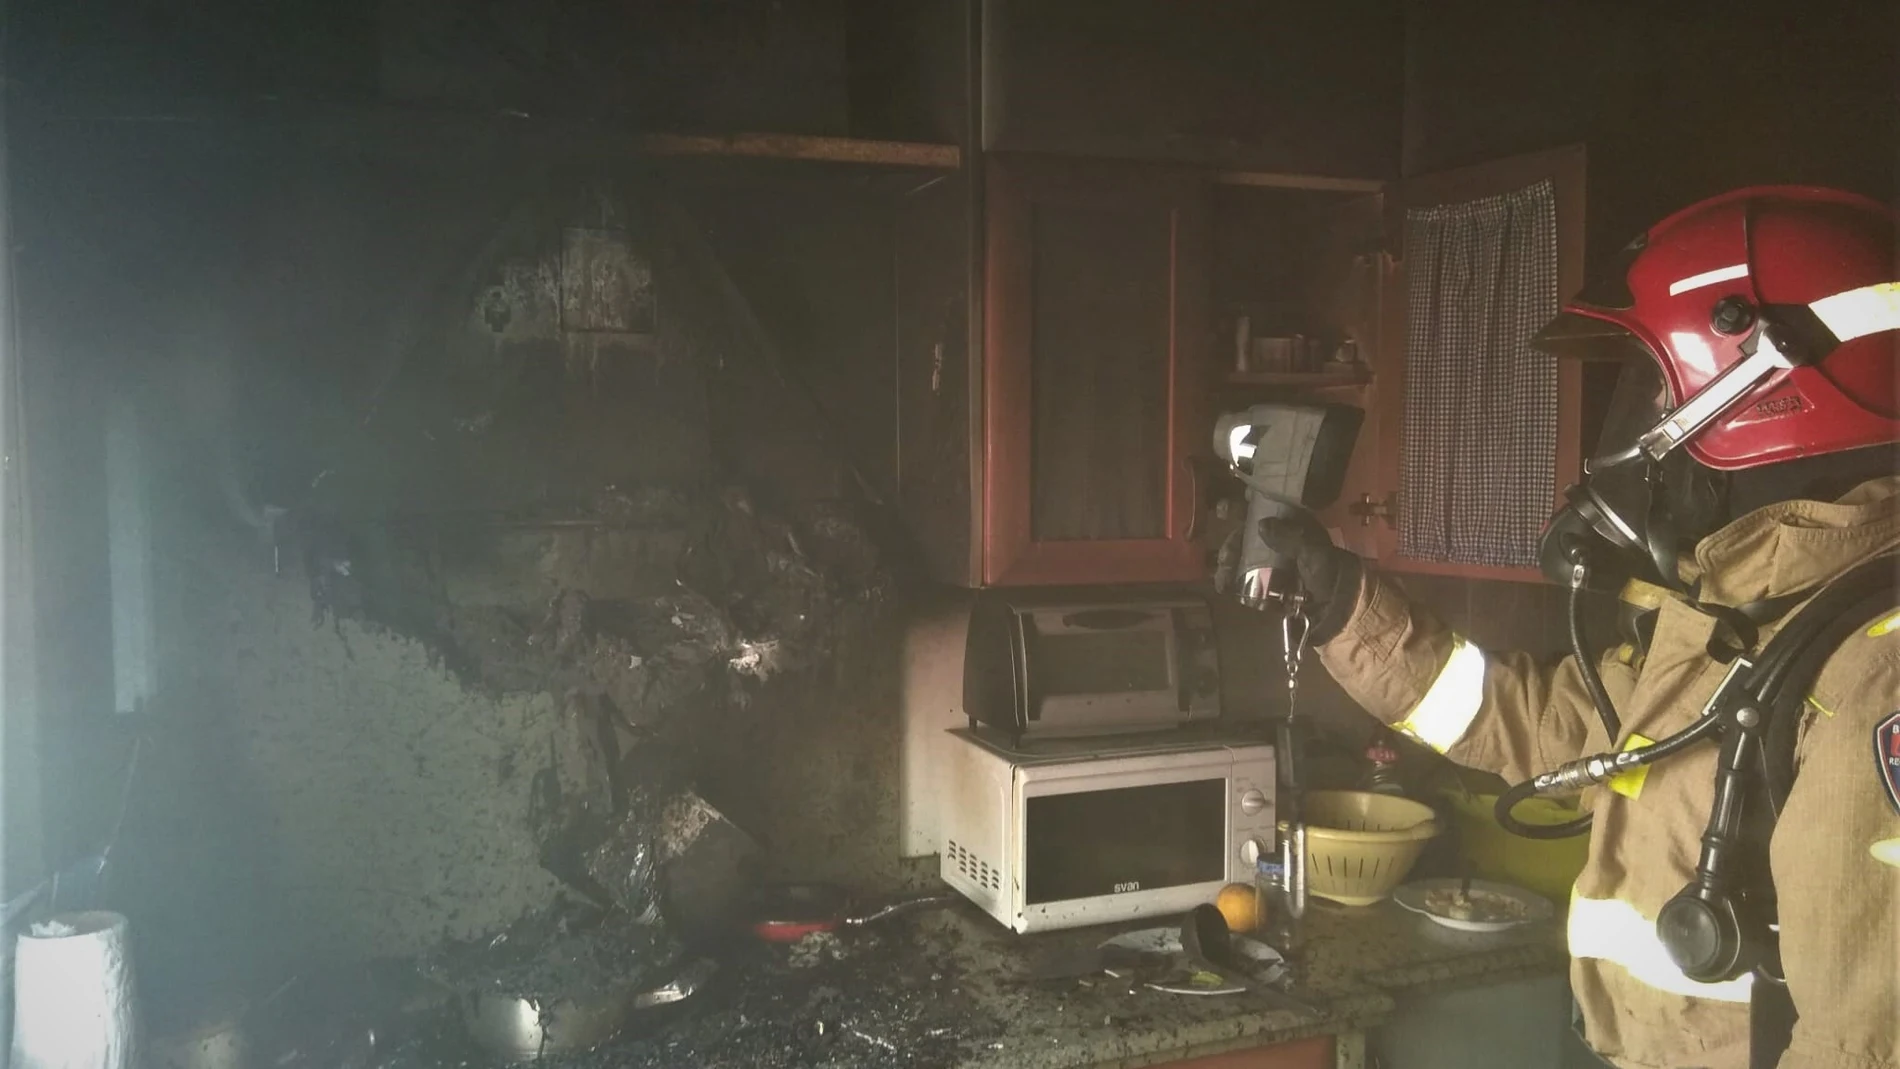 Bomberos extinguen un incendio declarado en la cocina de una vivienda de CeutíCEIS REGIÓN DE MURCIA23/09/2020